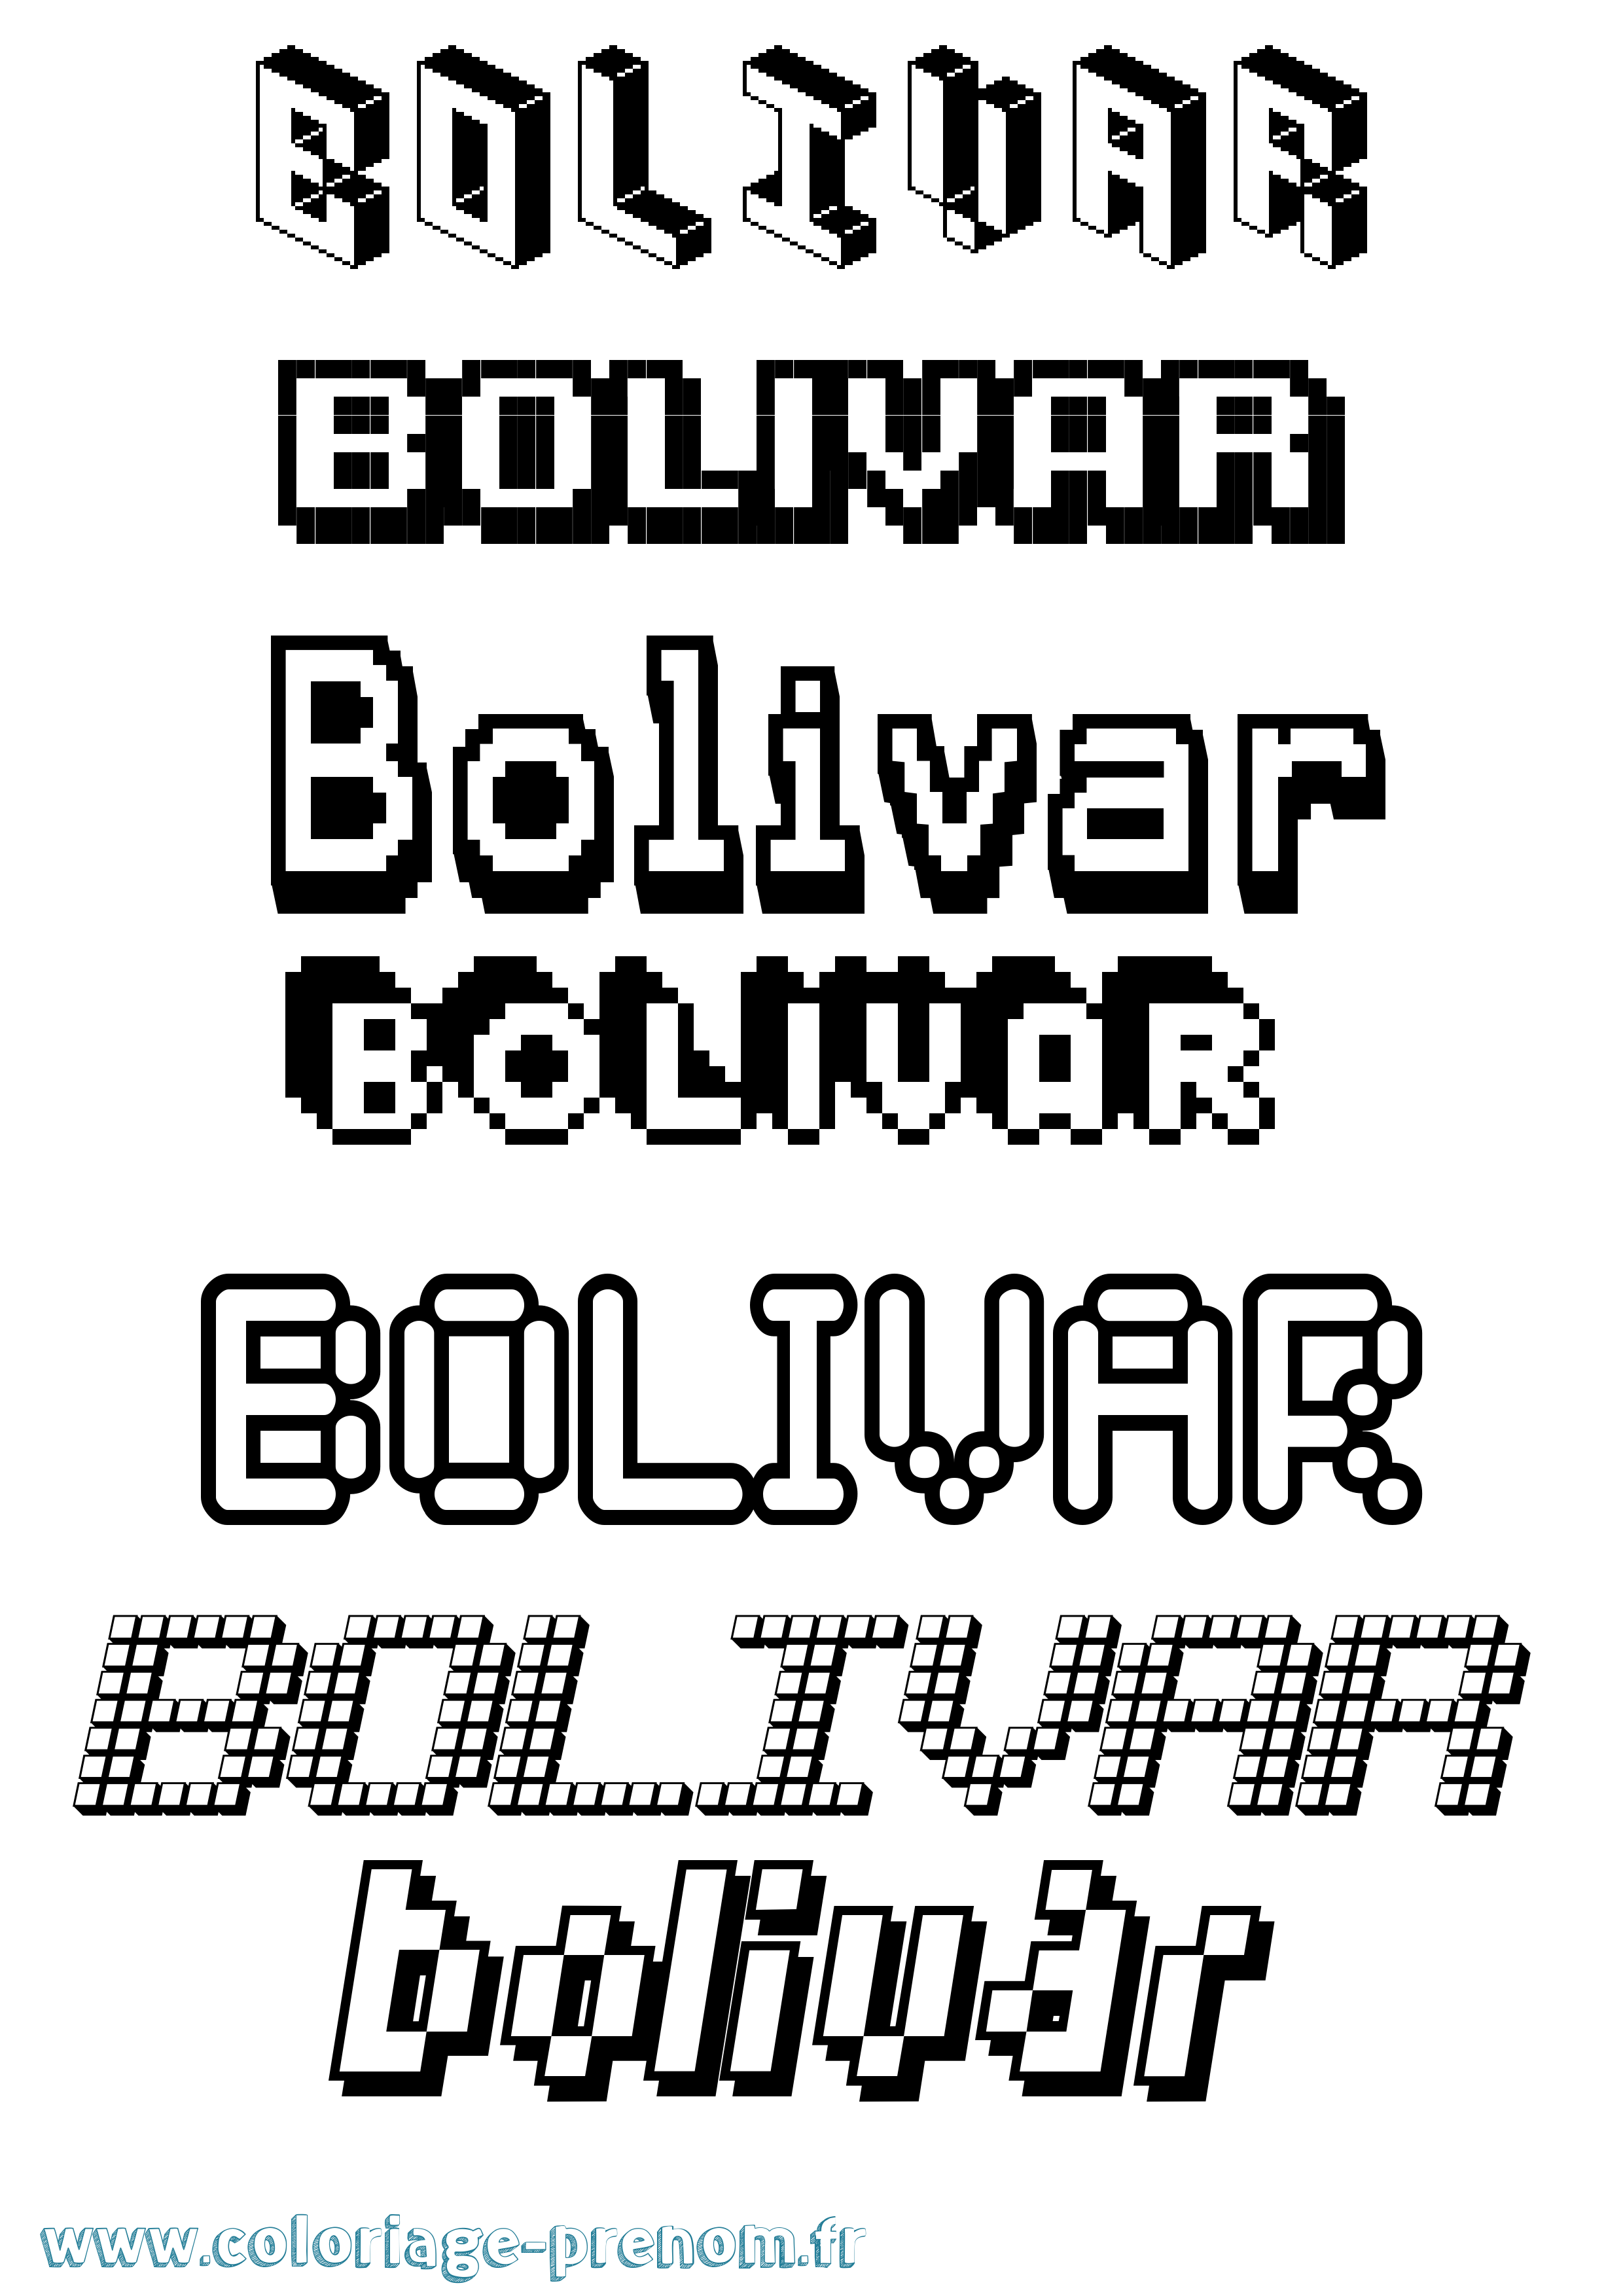 Coloriage prénom Bolivar Pixel